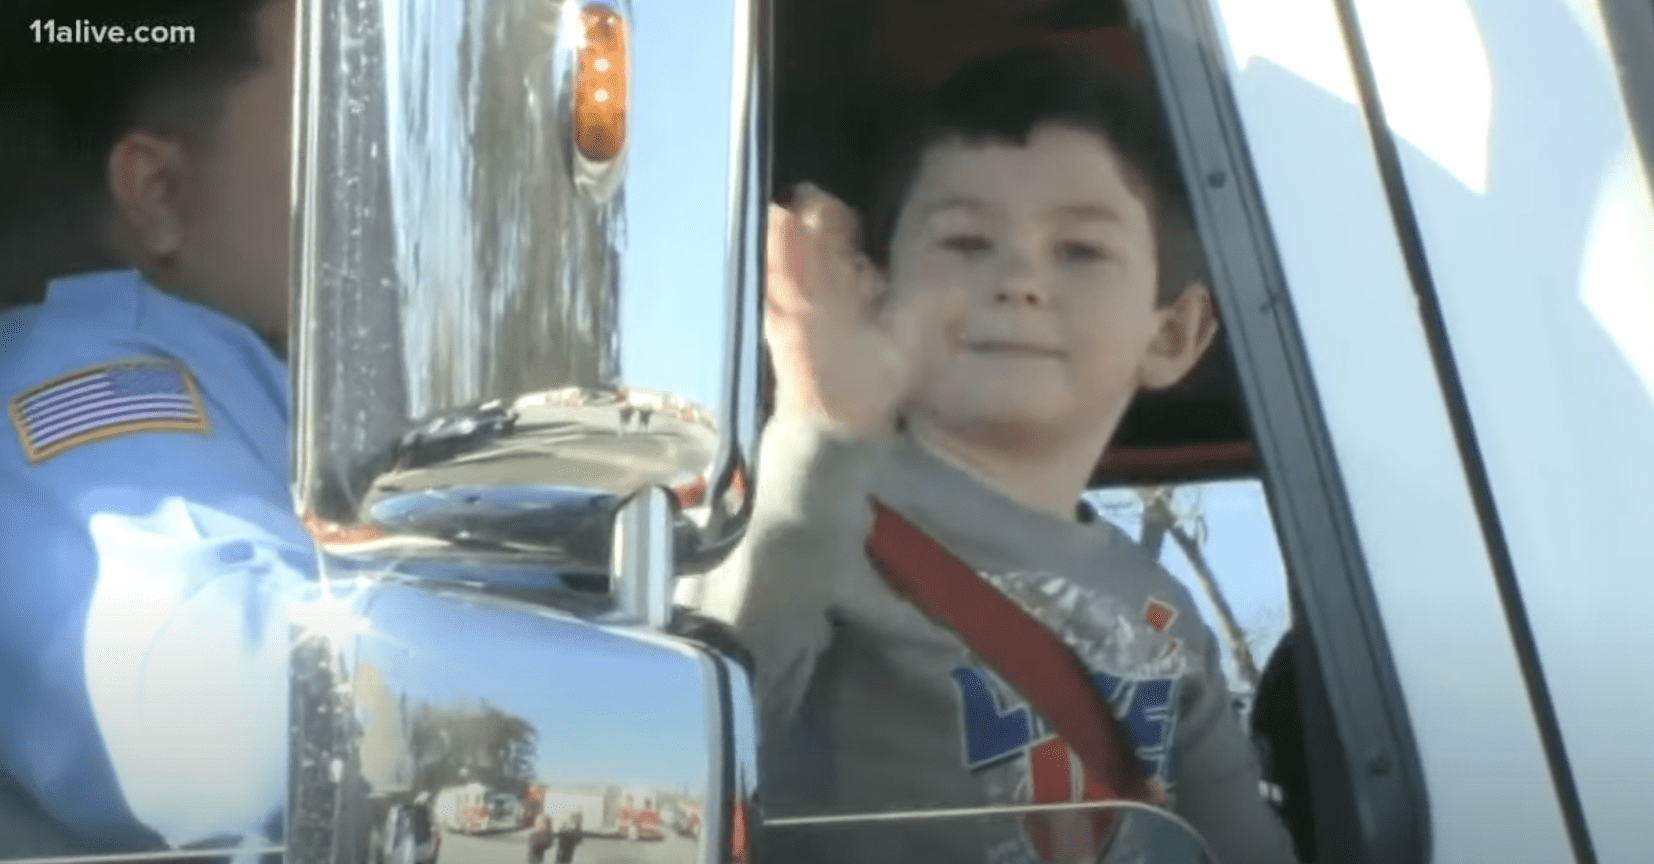 Noah Woods genießt eine feierliche Fahrt in einem Feuerwehrfahrzeug. | Quelle: YouTube.com/11Alive